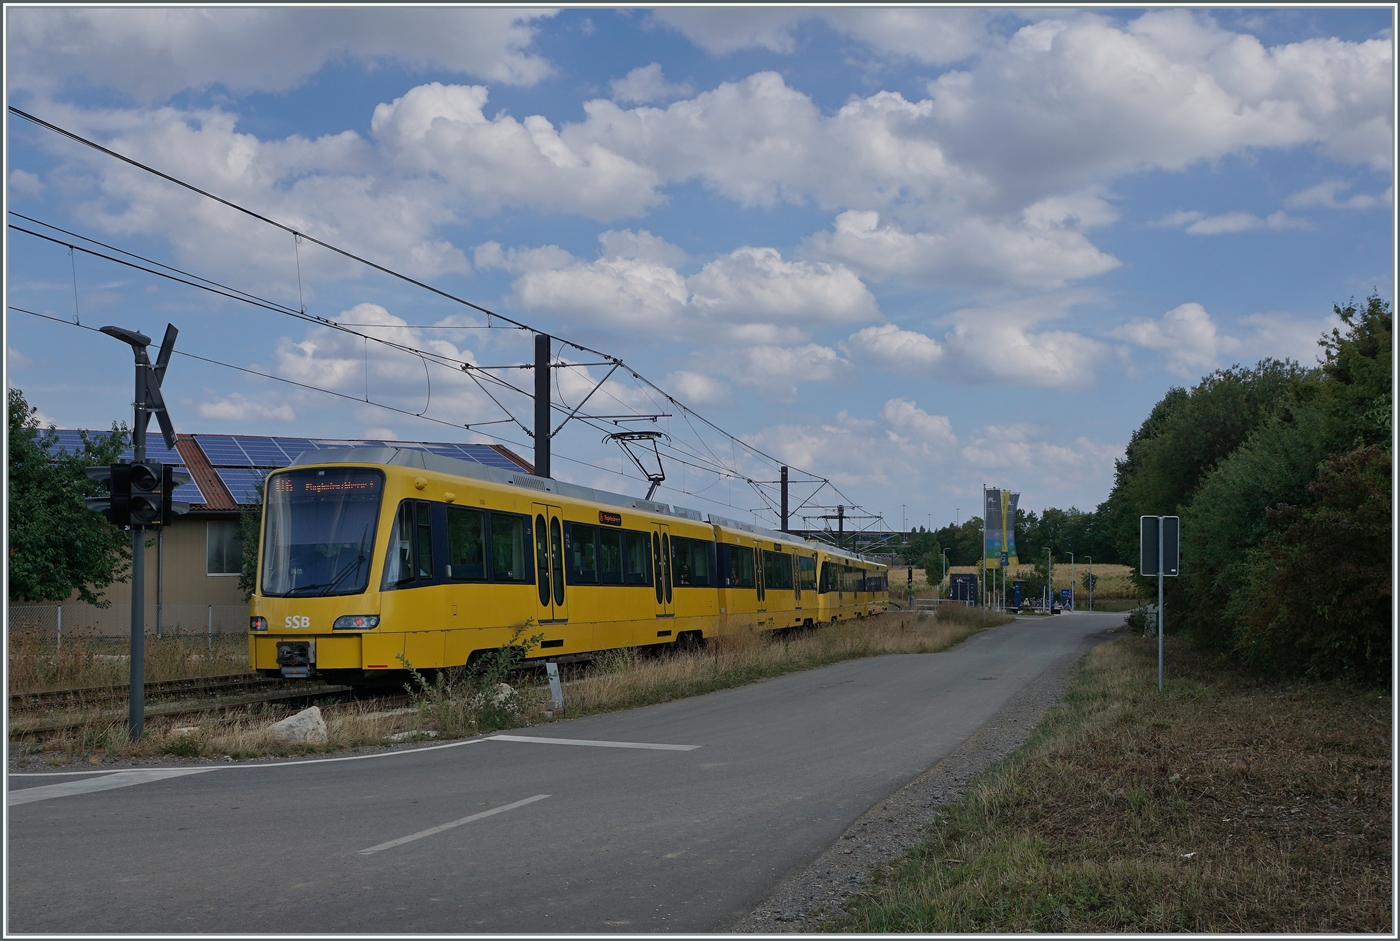 Ein Zug der U6 nach Stuttgart Flughafen erreicht die Haltestelle Echterdingen. 

29. August 2022